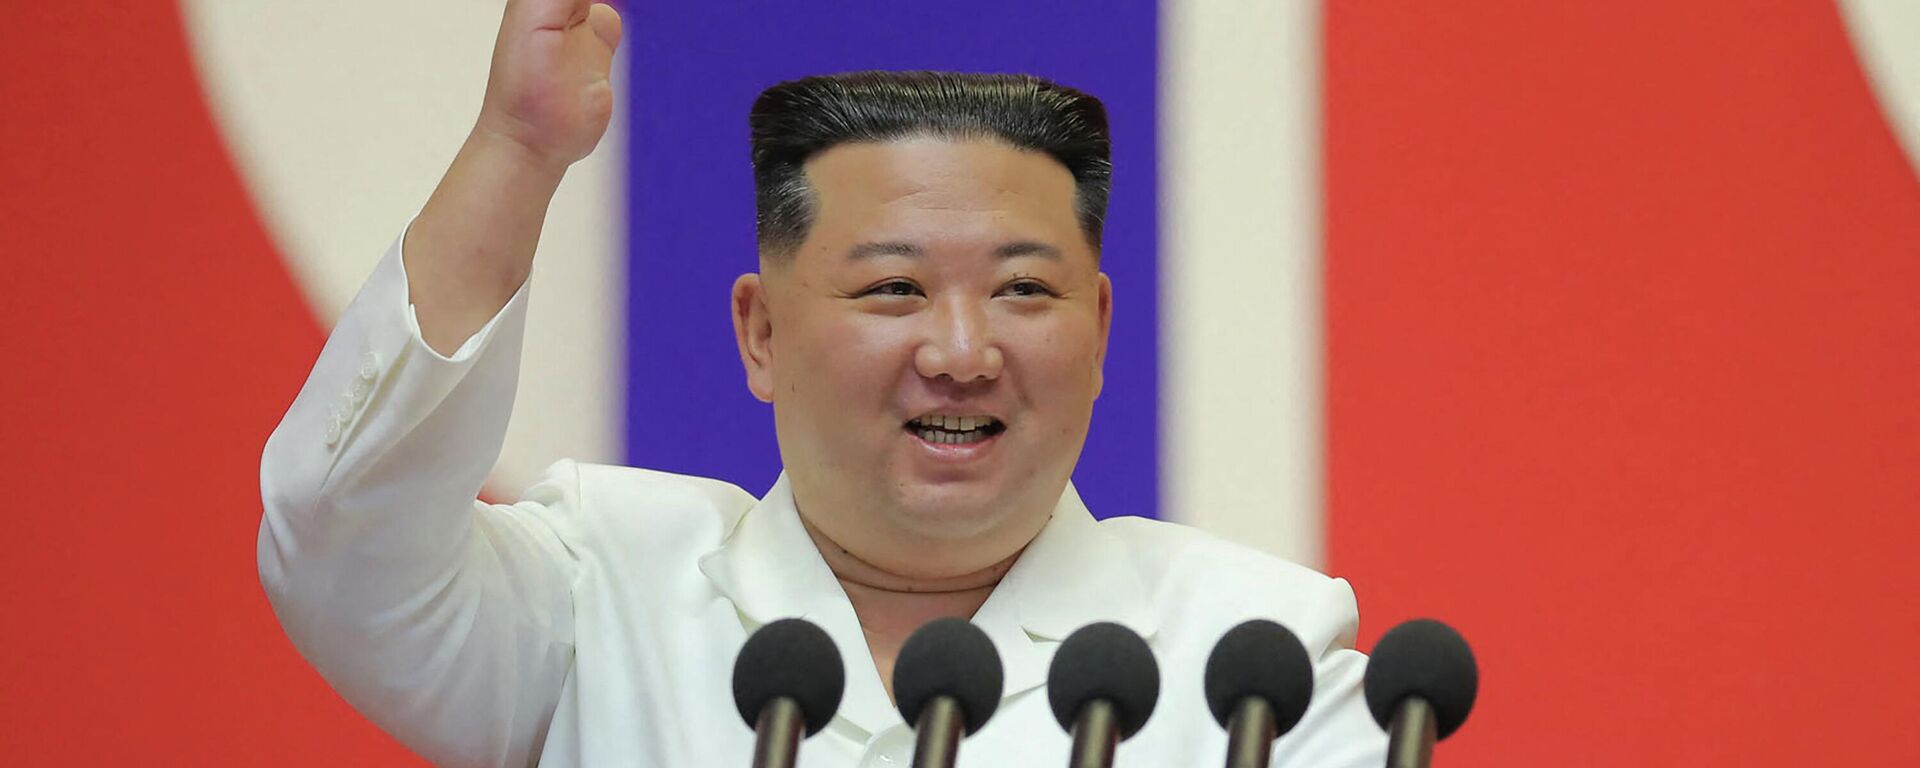 زعيم كوريا الشمالية، كيم جونغ أون، يلقي خطابا لتهنئة أعضاء القسم الطبي العسكري بالجيش الشعبي الكوري على المساهمة في منع انتشار (كوفيد-19) في بيونغ يانغ، 18 أغسطس/ آب 2022 - سبوتنيك عربي, 1920, 19.03.2023